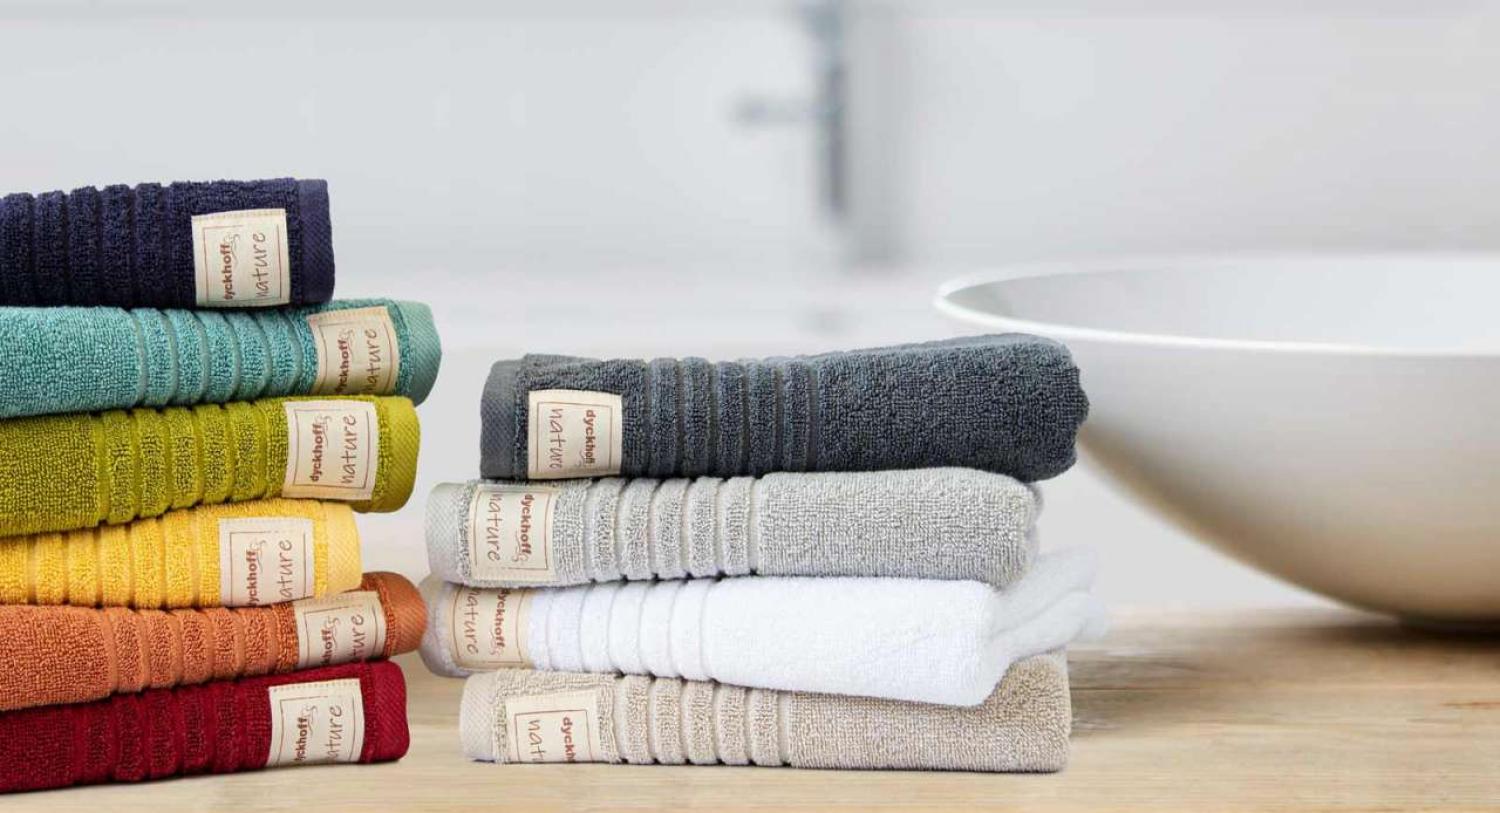 Bio Baumwolle Handtücher - alle Größen & Trendfarben Waschhandschuh, 16x21 cm, silber Bild 1